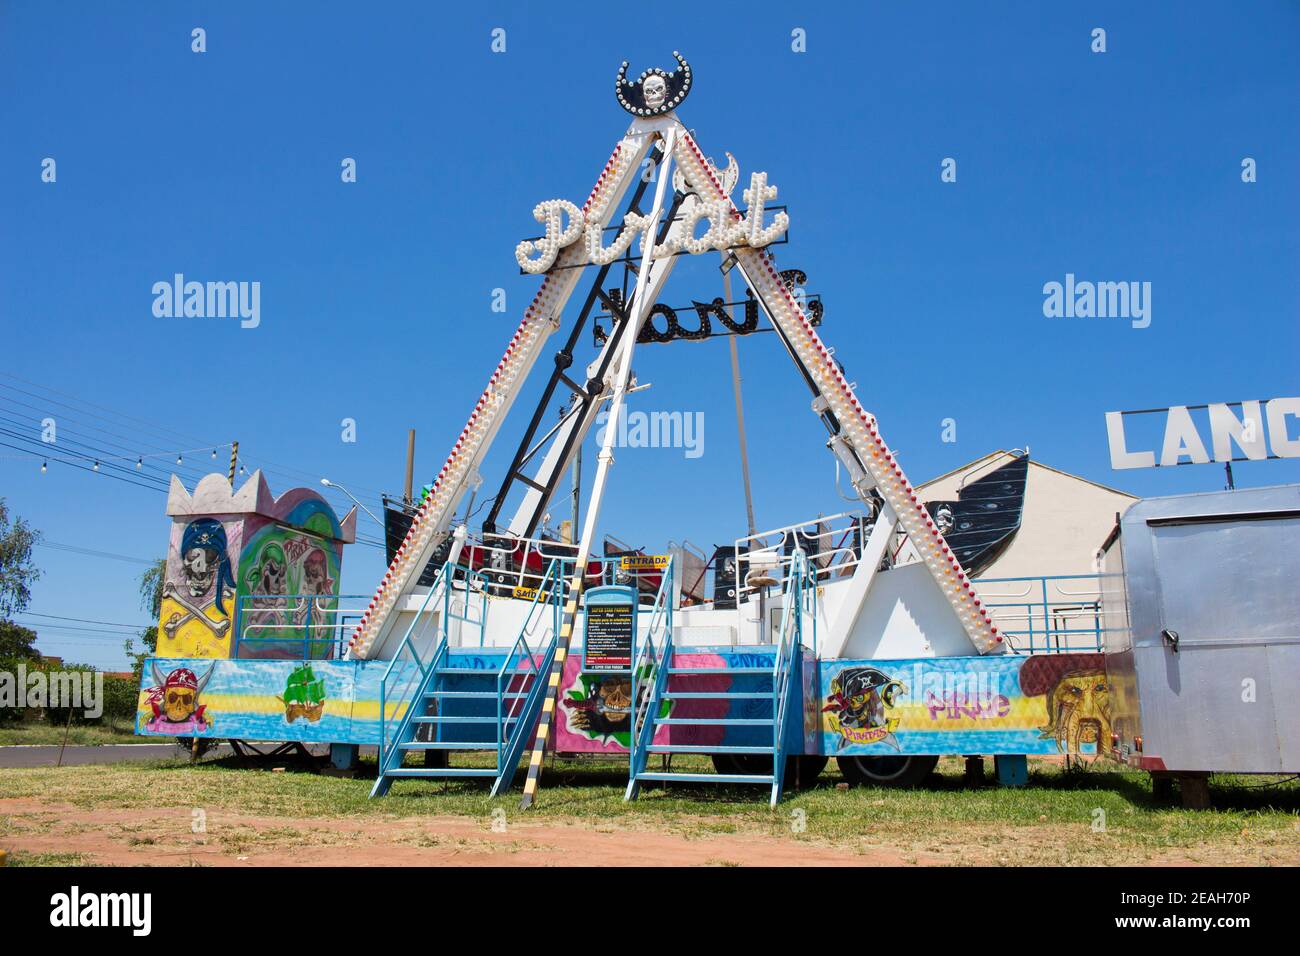 Ibitinga, SP, Brazil - 02 07 2021: Pirate Ship Ride at an Amusement Park Stock Photo